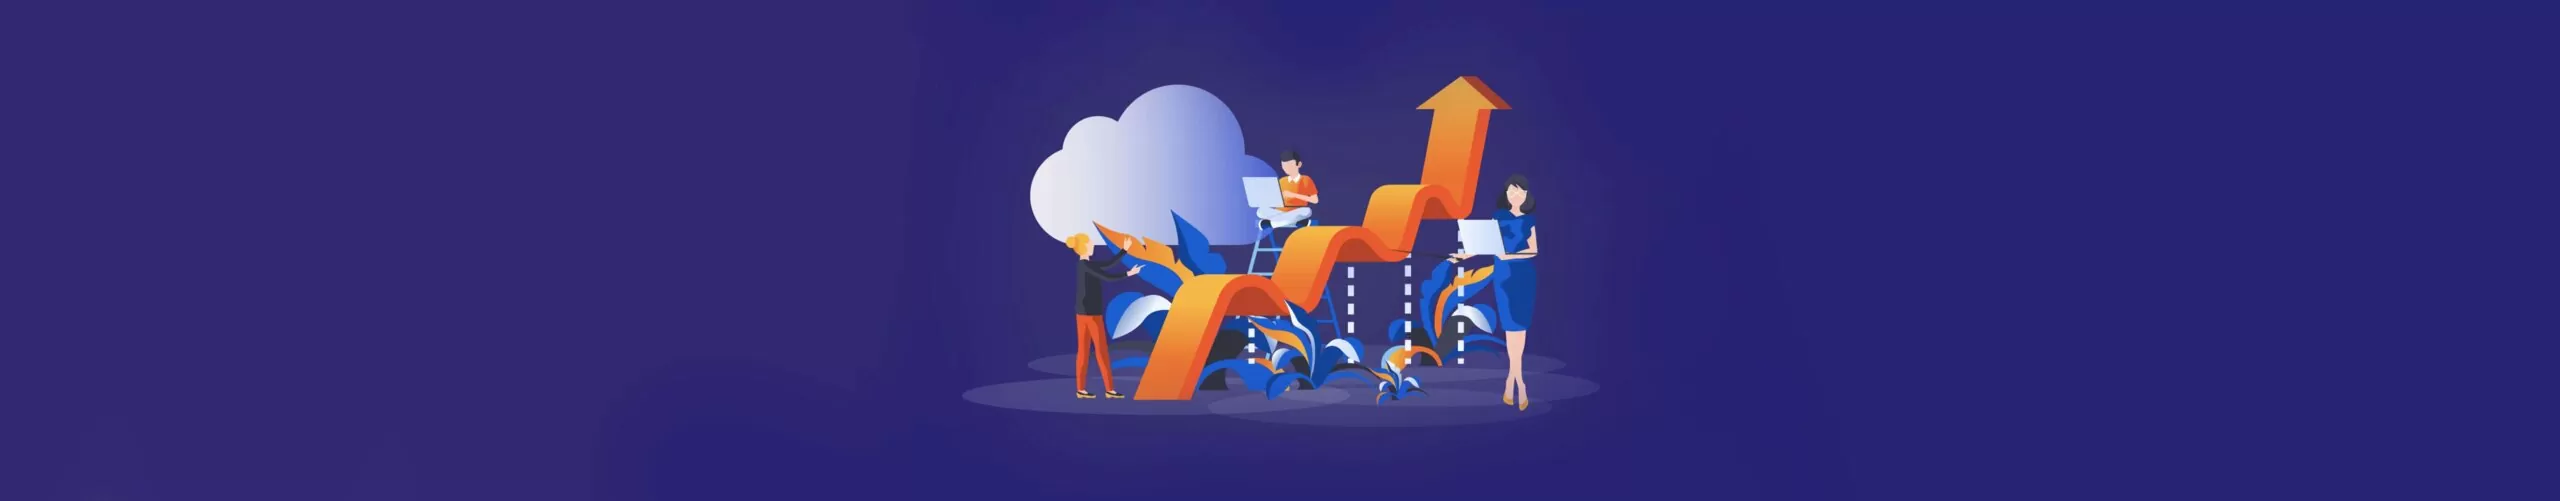 Illustration Enterprise Cloud Strategy